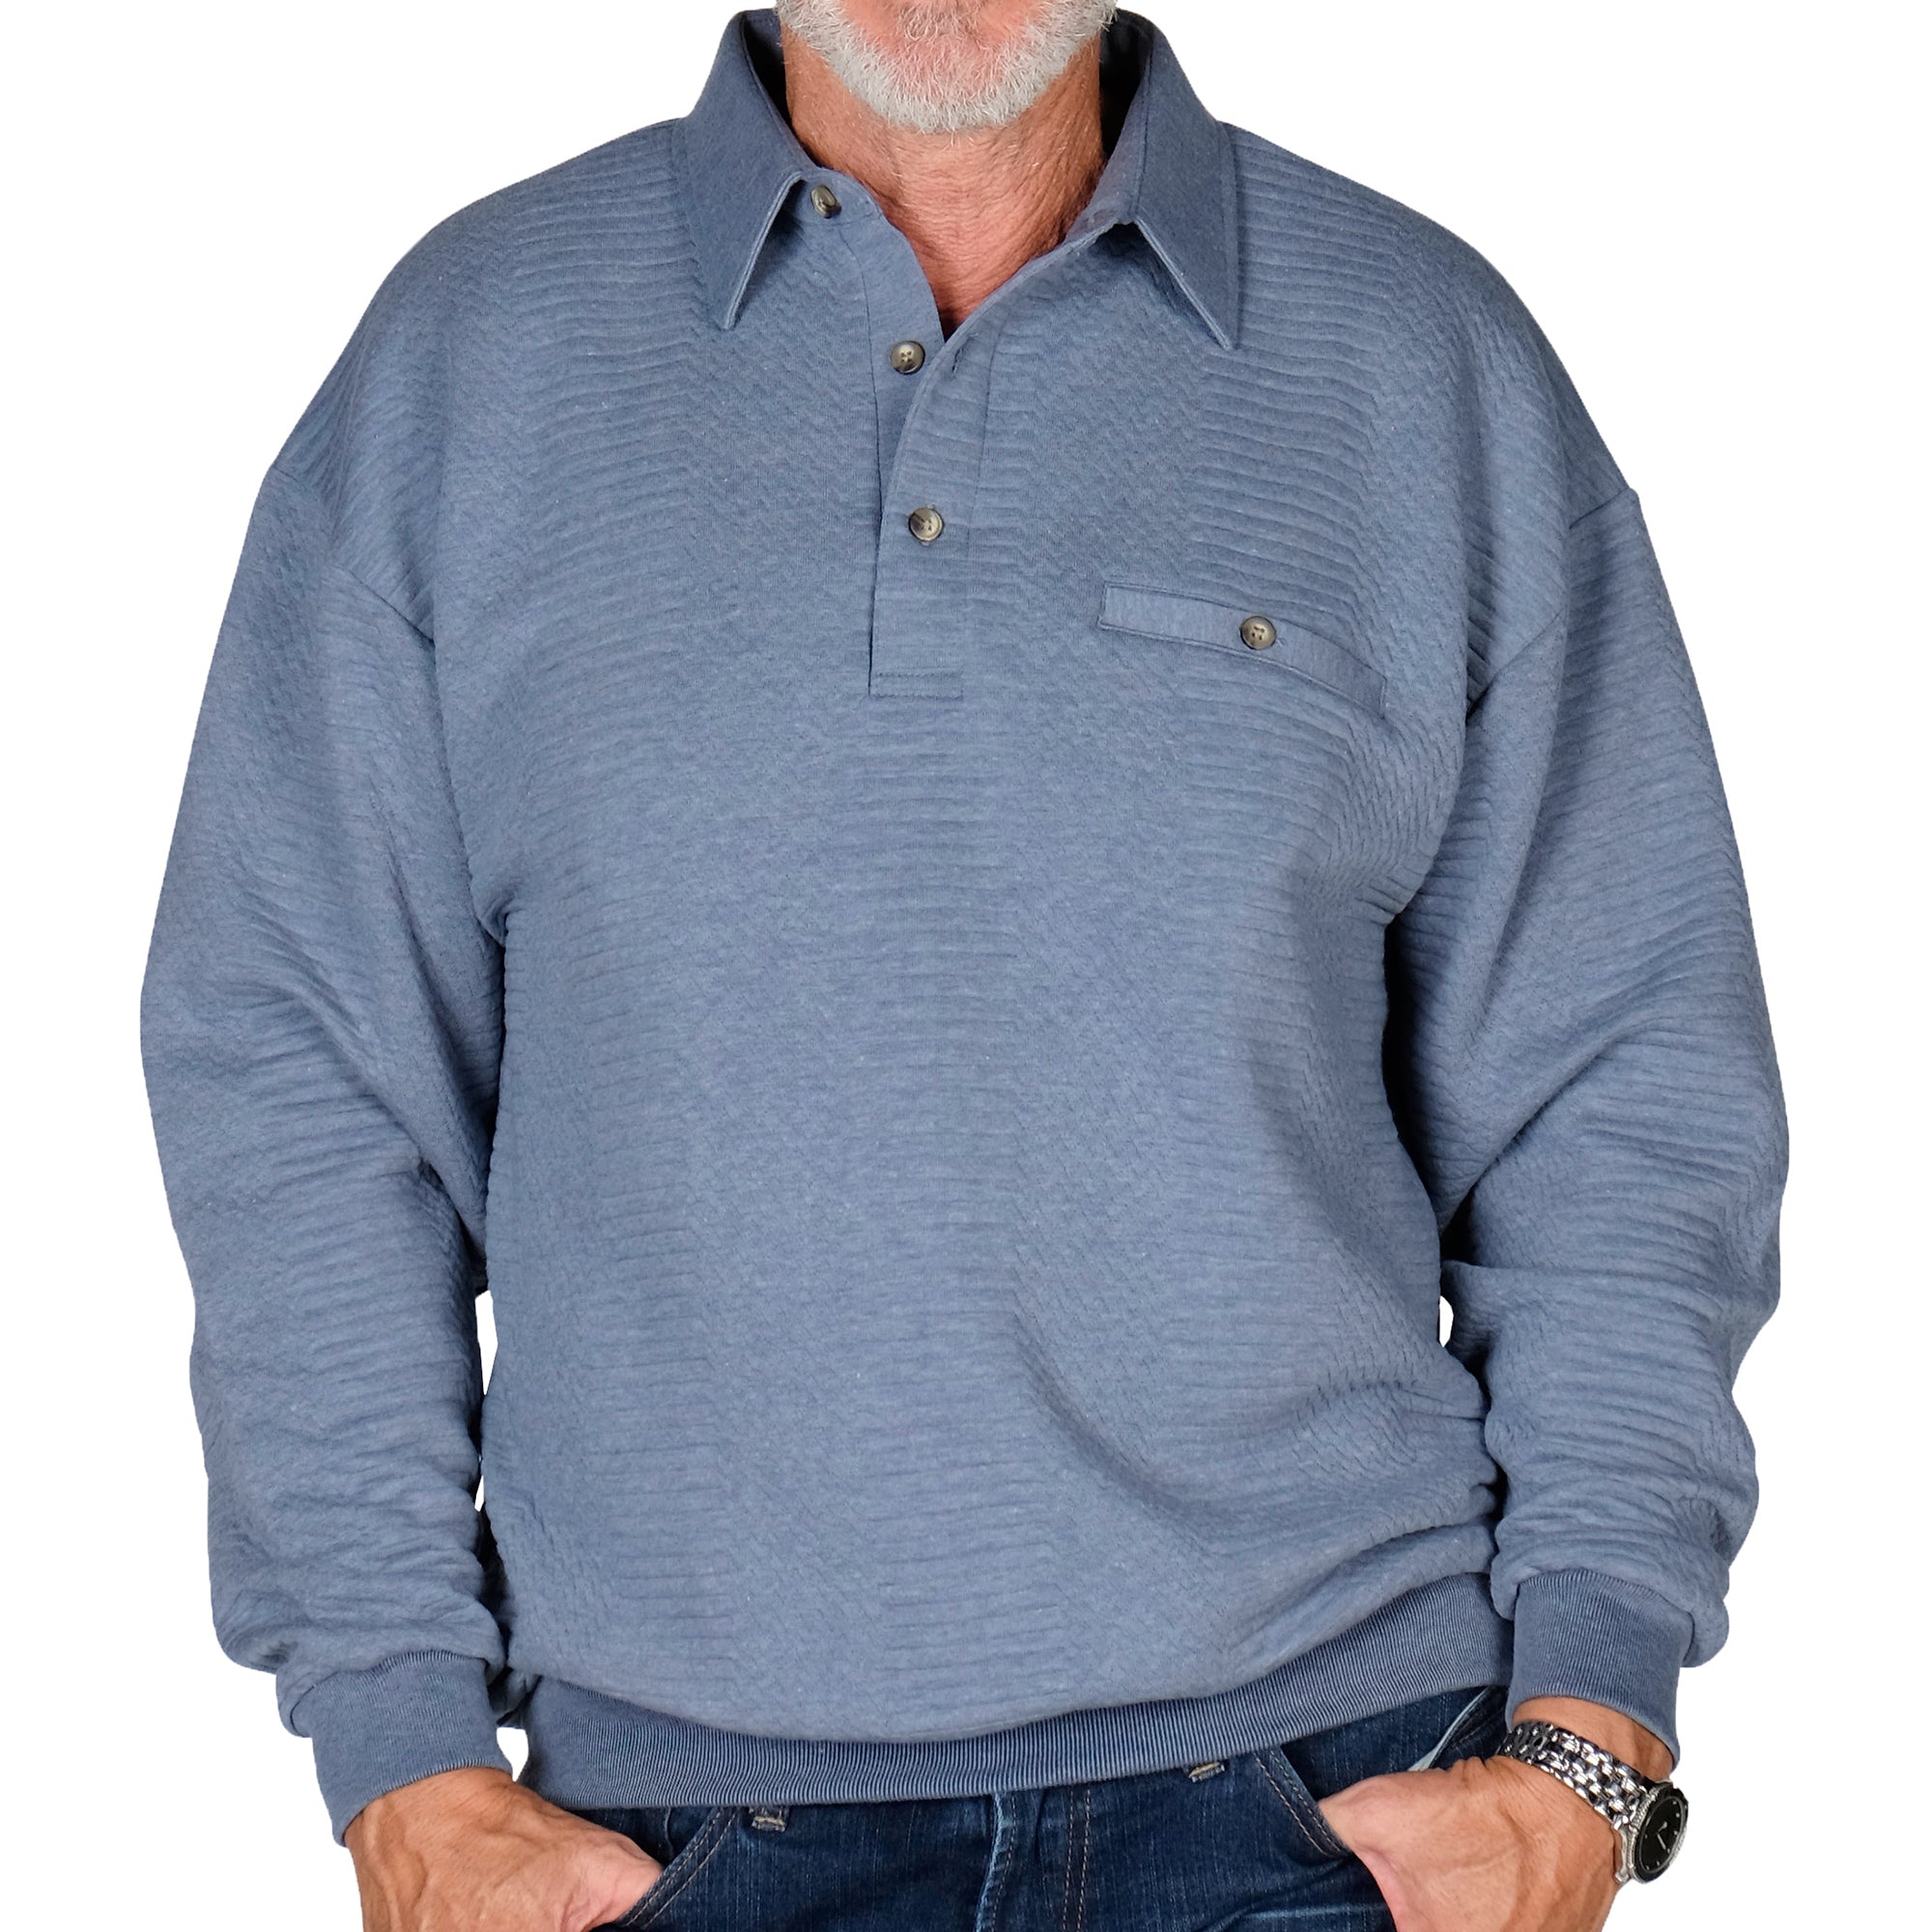 Men's Long Sleeve Banded Polo Shirt